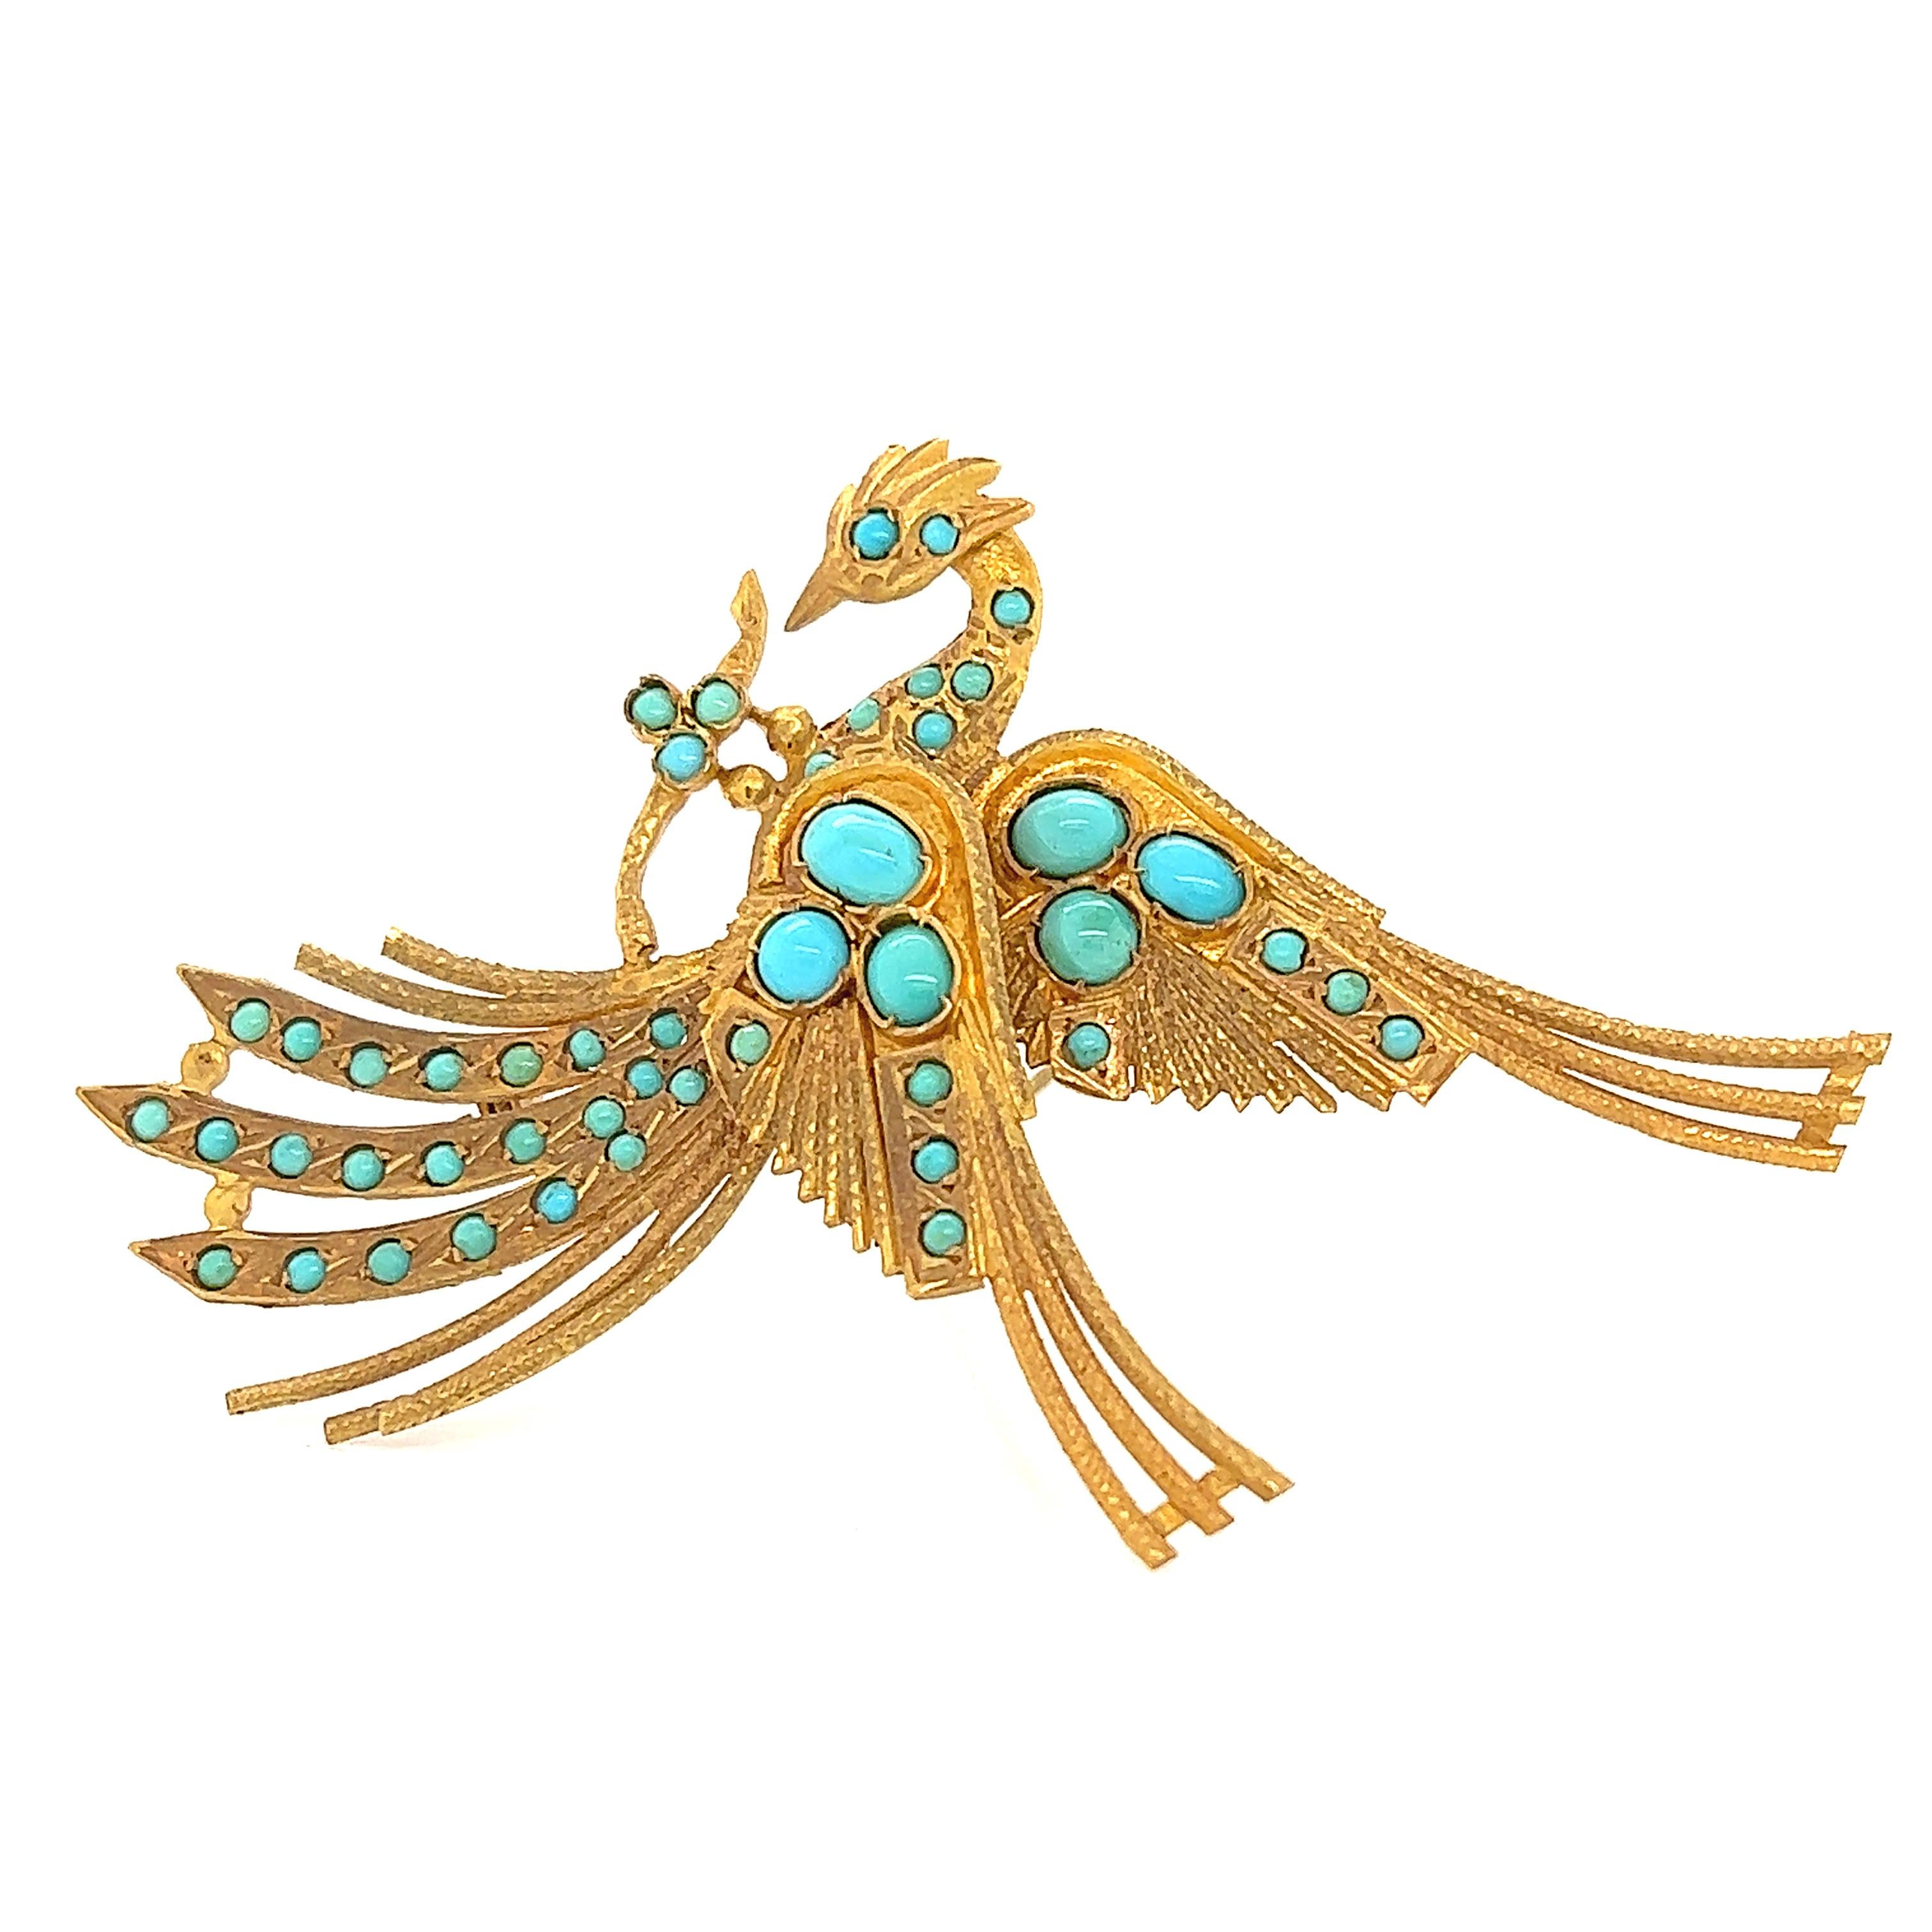 Cette broche de style égyptien, réalisée à la main, est d'une grande beauté. La broche est réalisée en or jaune 18 carats sur le thème du phénix, un oiseau mythique. Le travail de l'or sur la broche est vraiment phénoménal, des techniques rarement